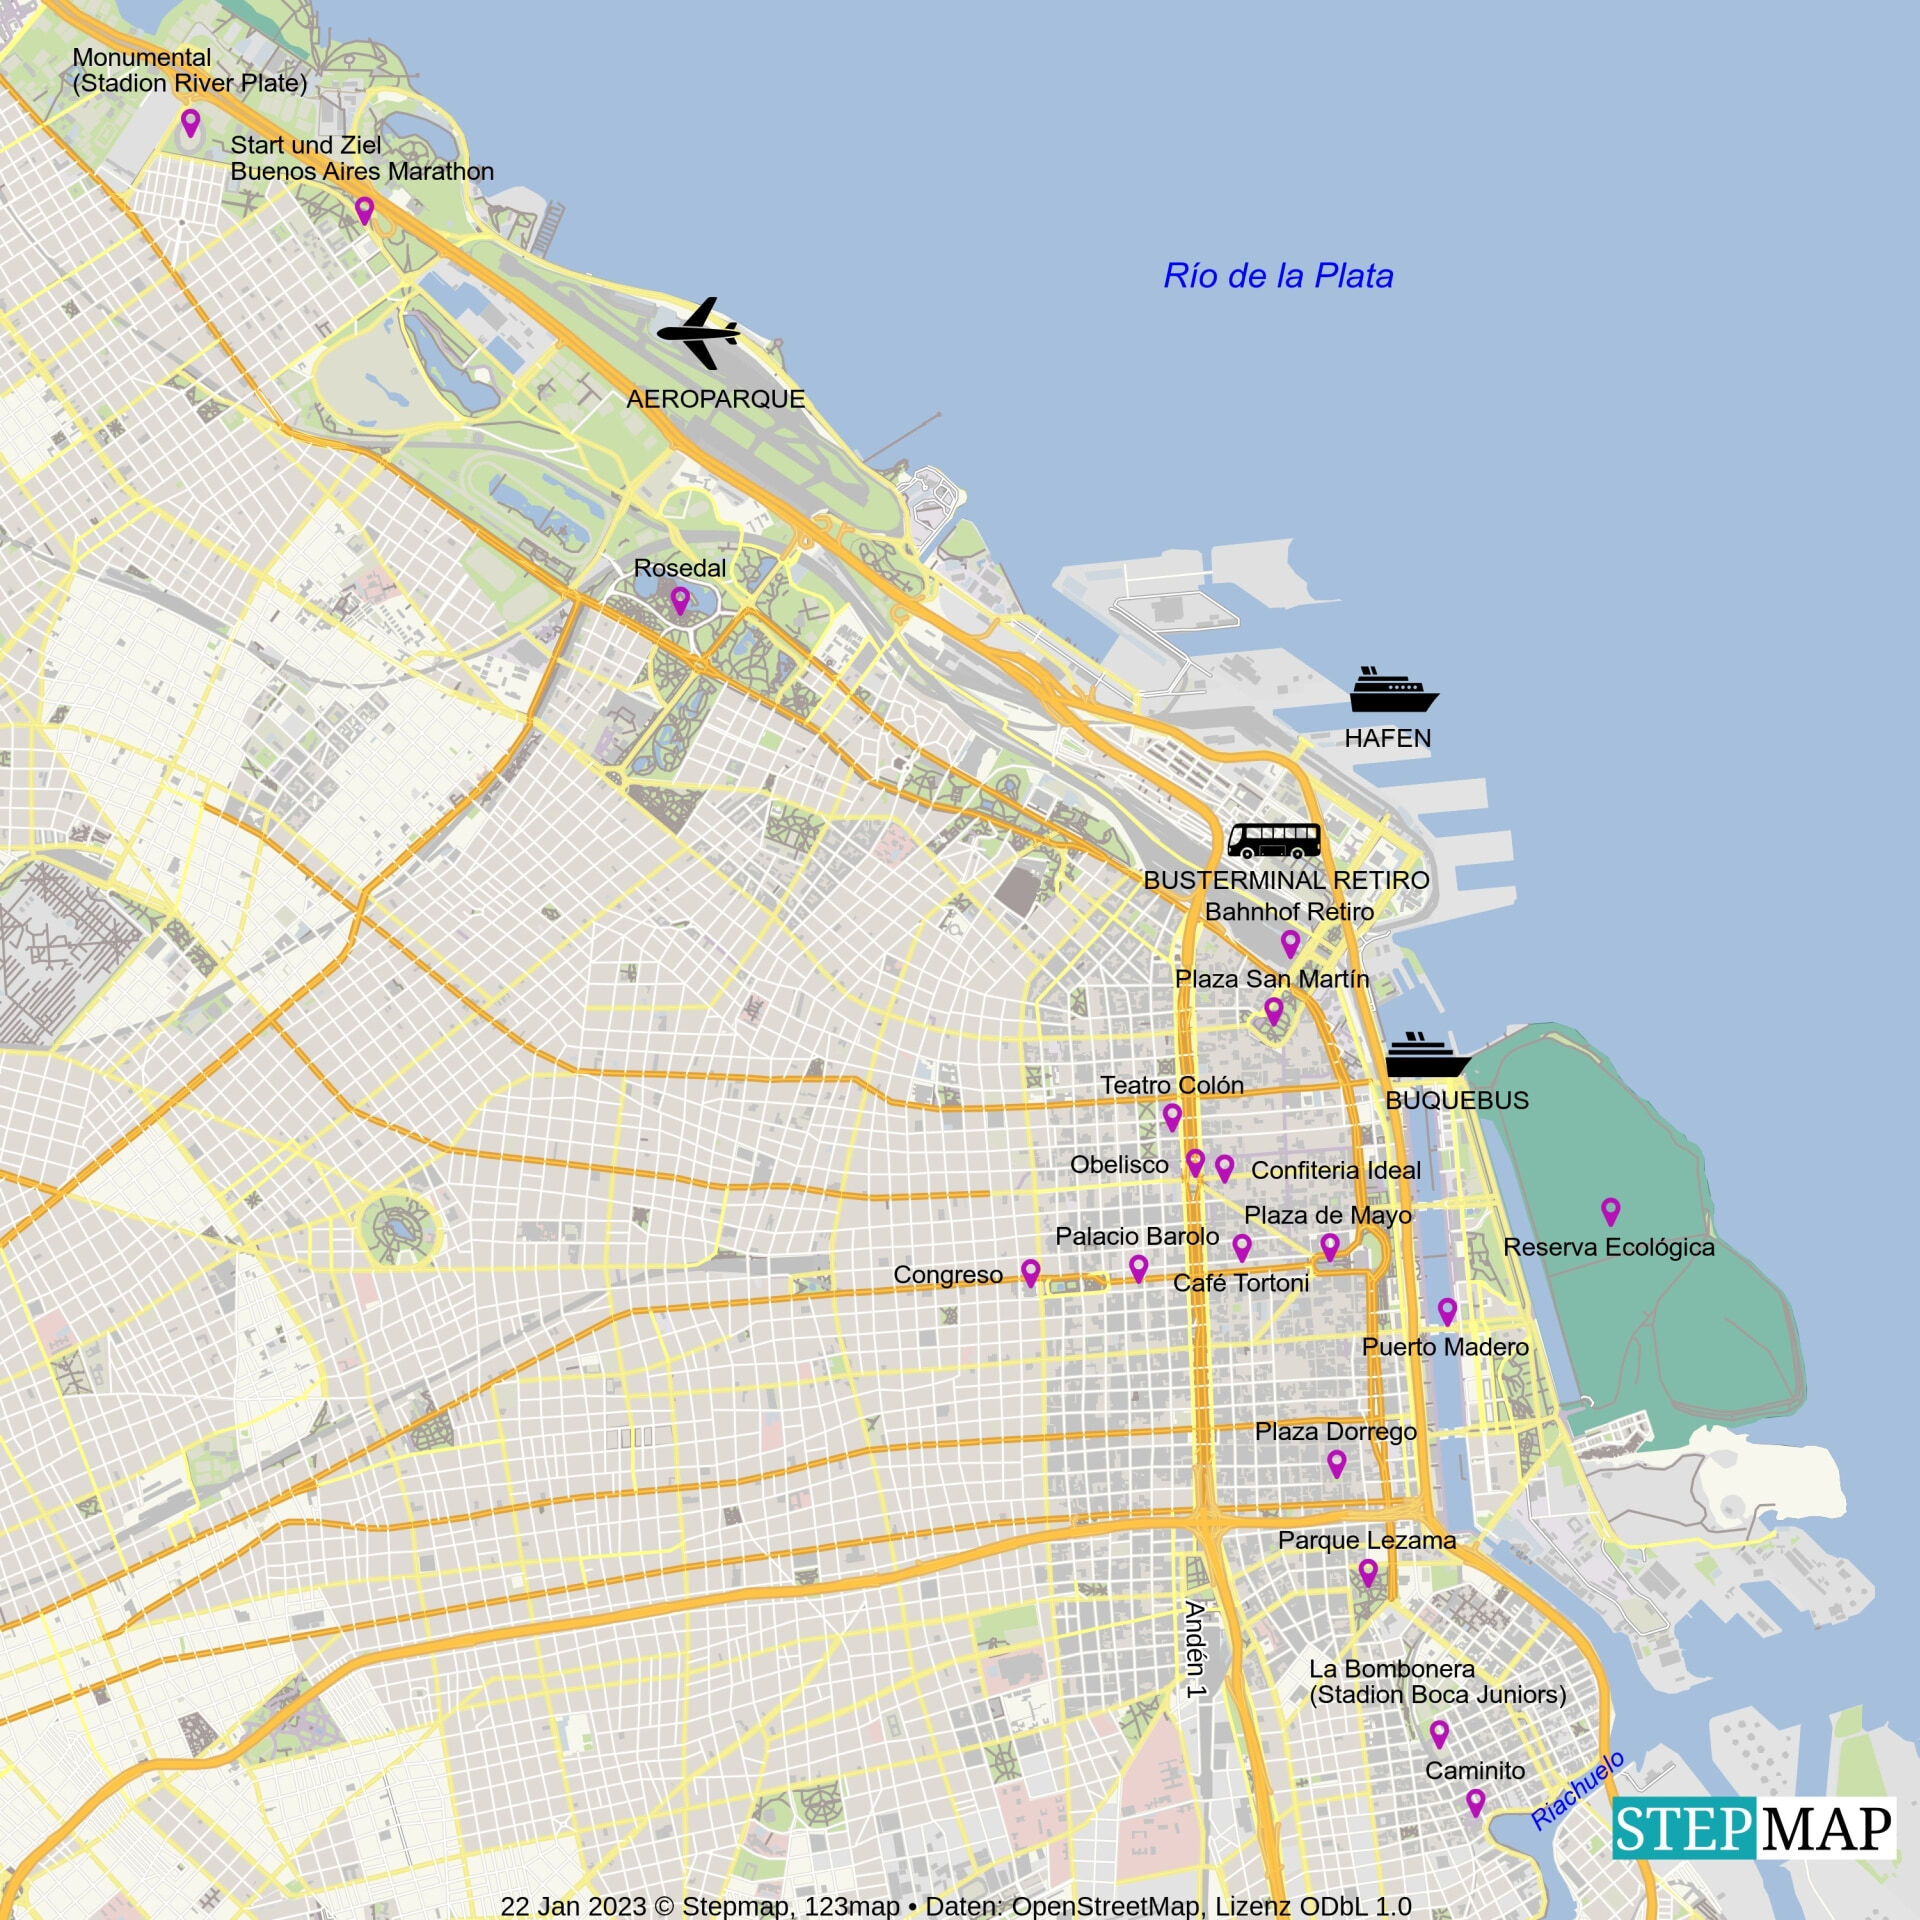 Stadtplan mit Sehenswürdigkeiten Buenos Aires